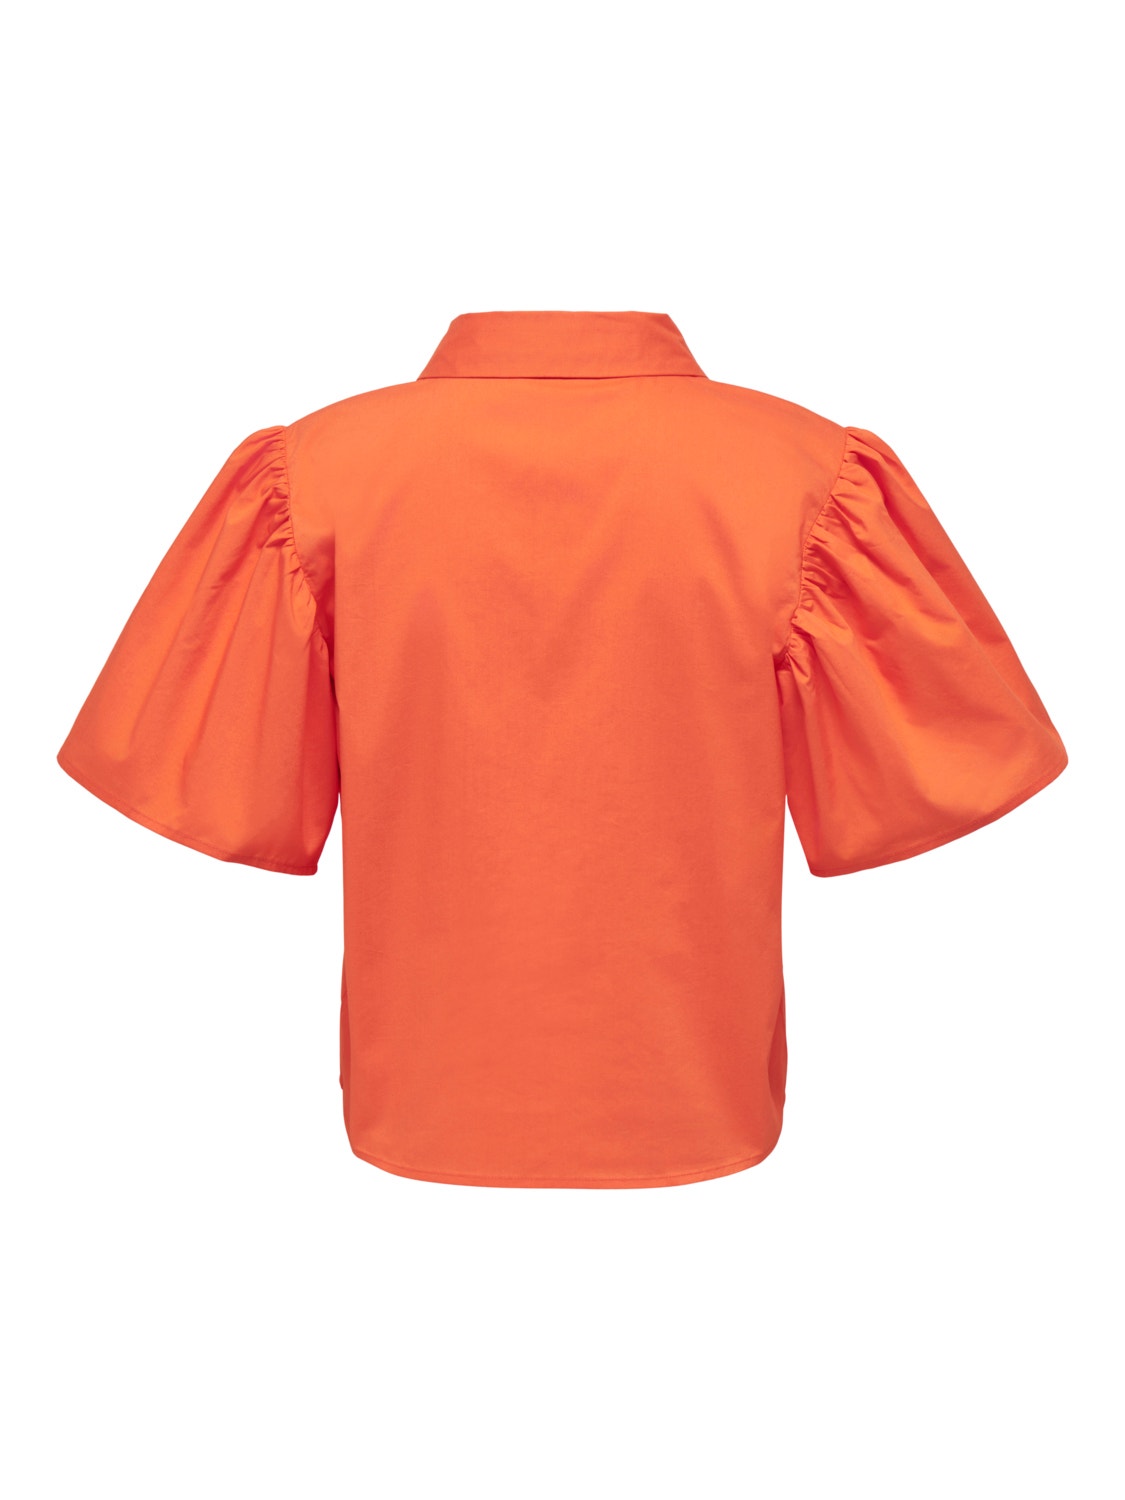 ONLY Regular Fit Shirt collar Volume sleeves Shirt -Scarlet Ibis - 15286420